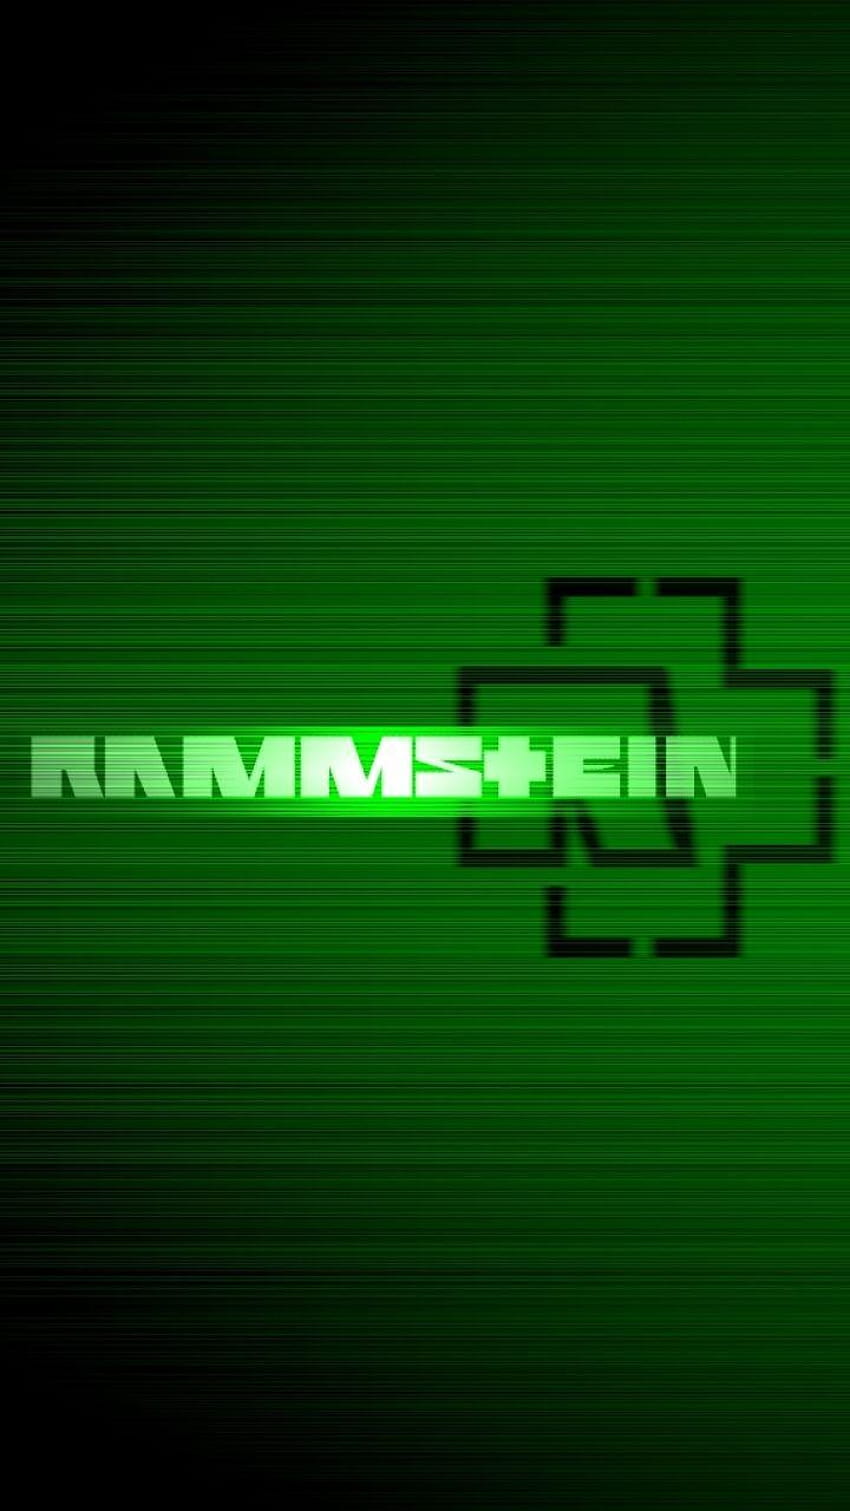 Música/Rammstein, logotipo de rammstein fondo de pantalla del teléfono